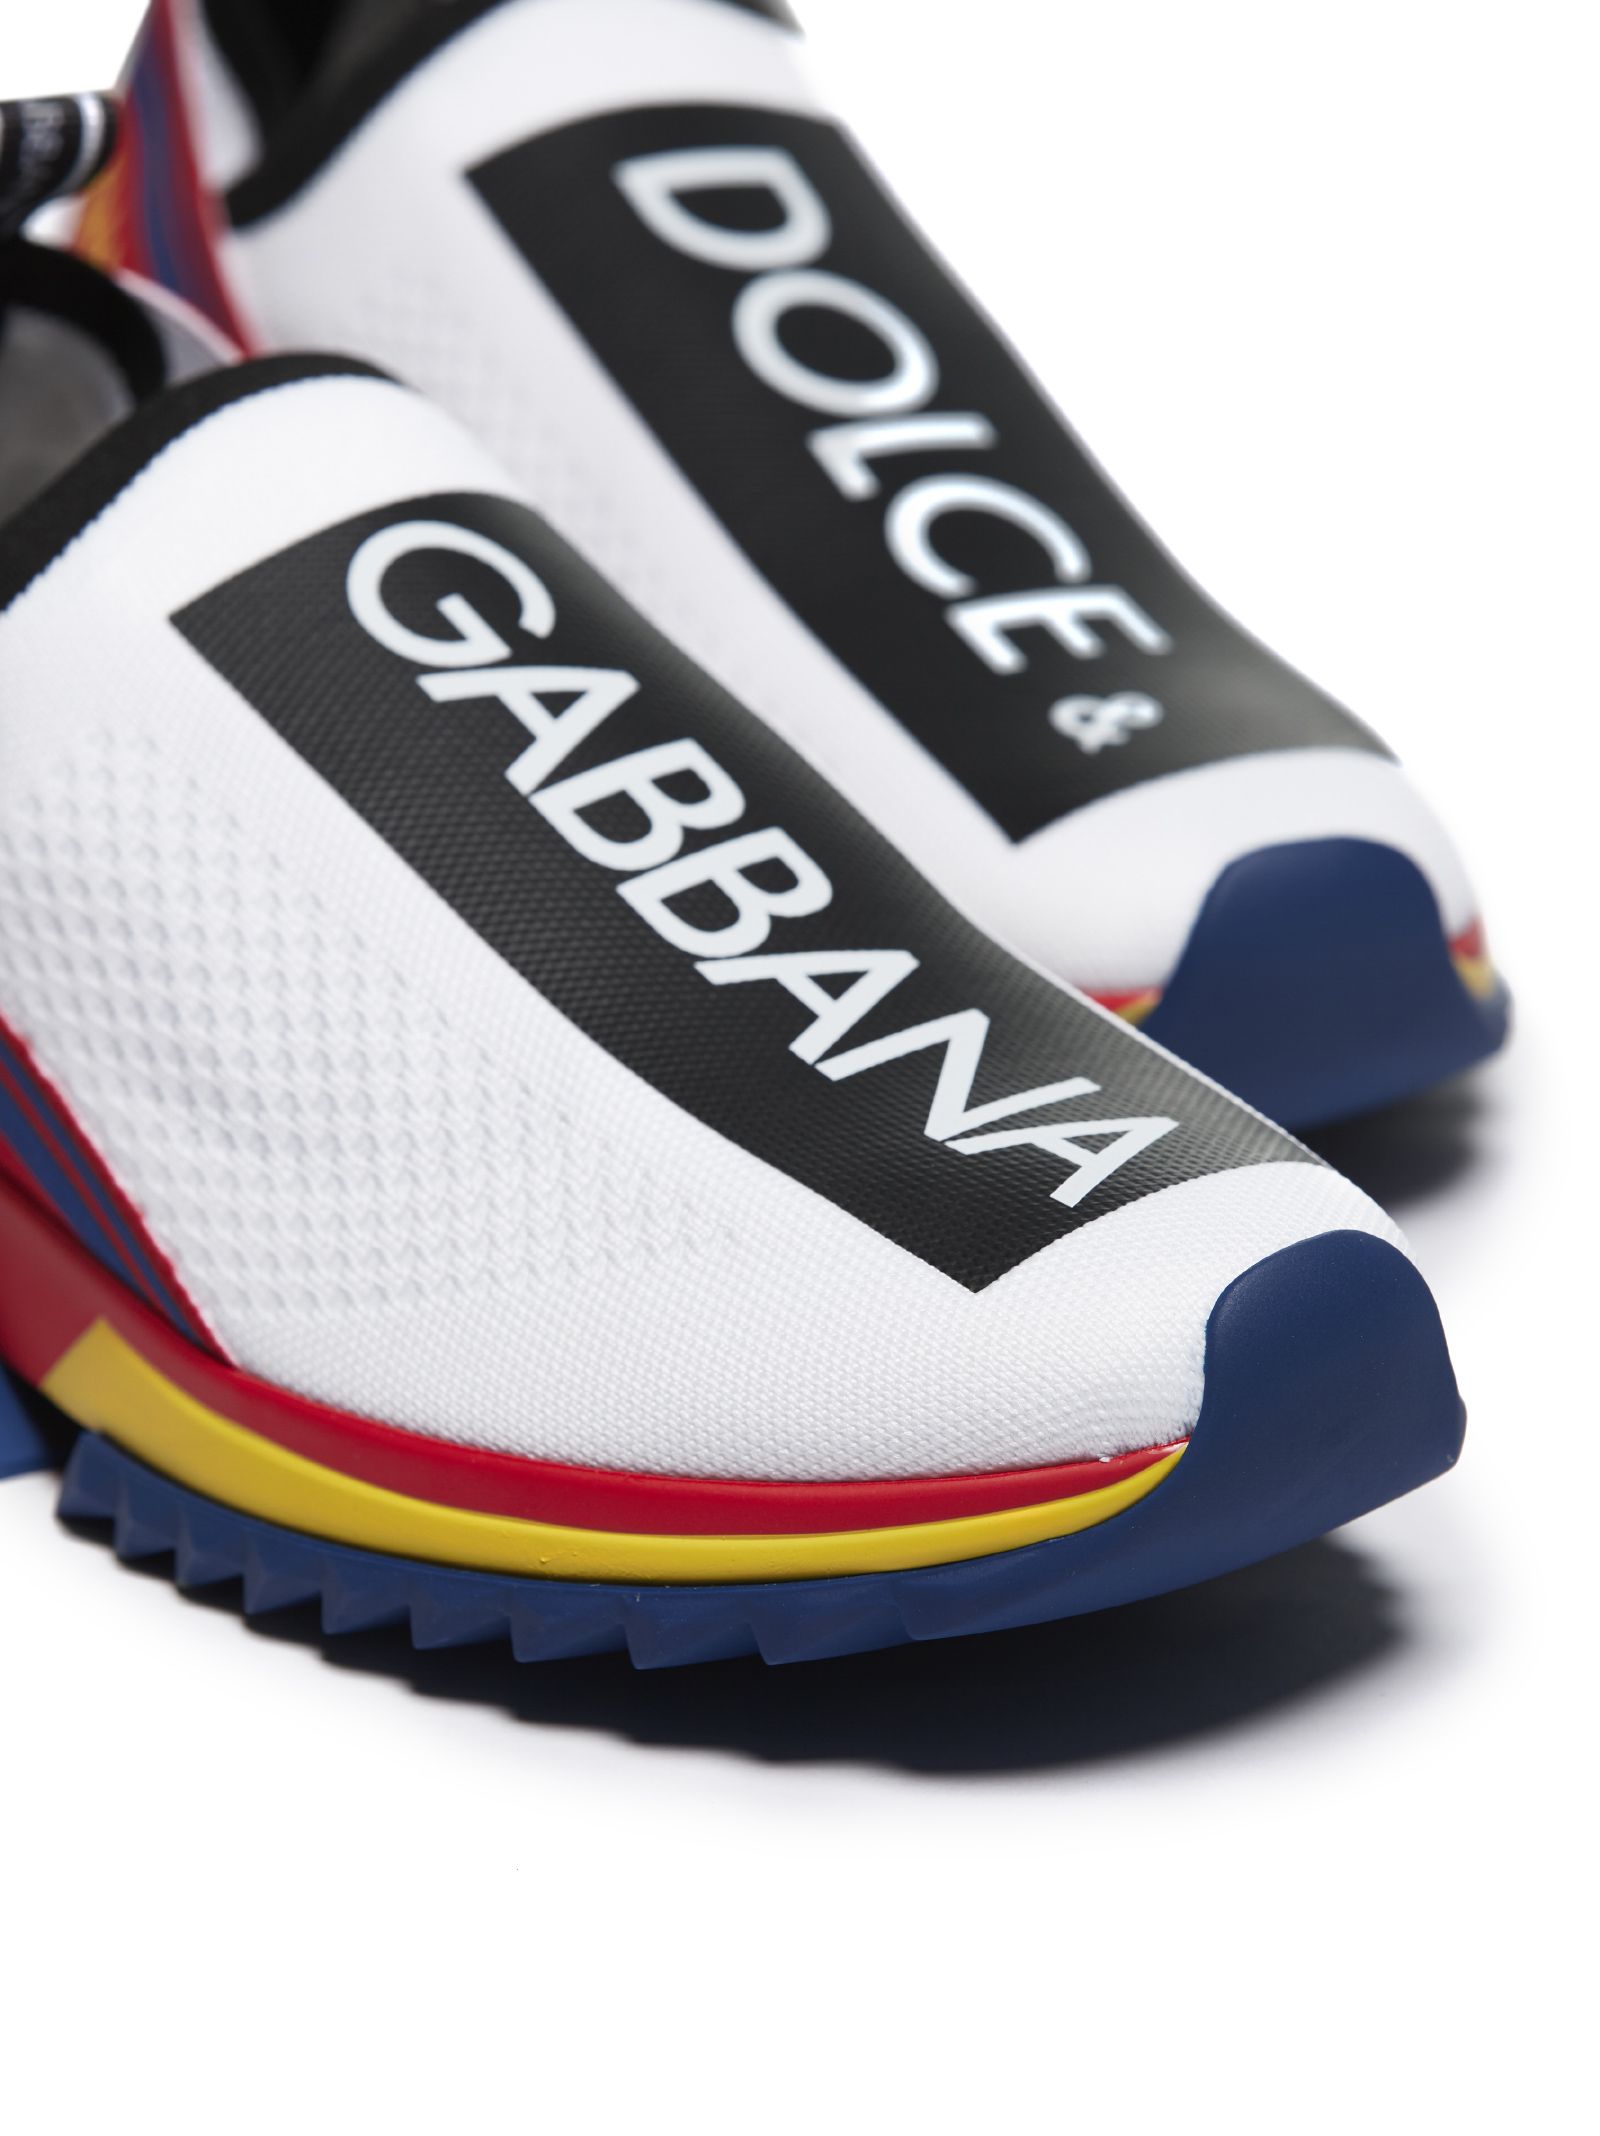 Dolce & Gabbana Dolce & Gabbana Sorrento Slip-on Sneakers - Bianco ...